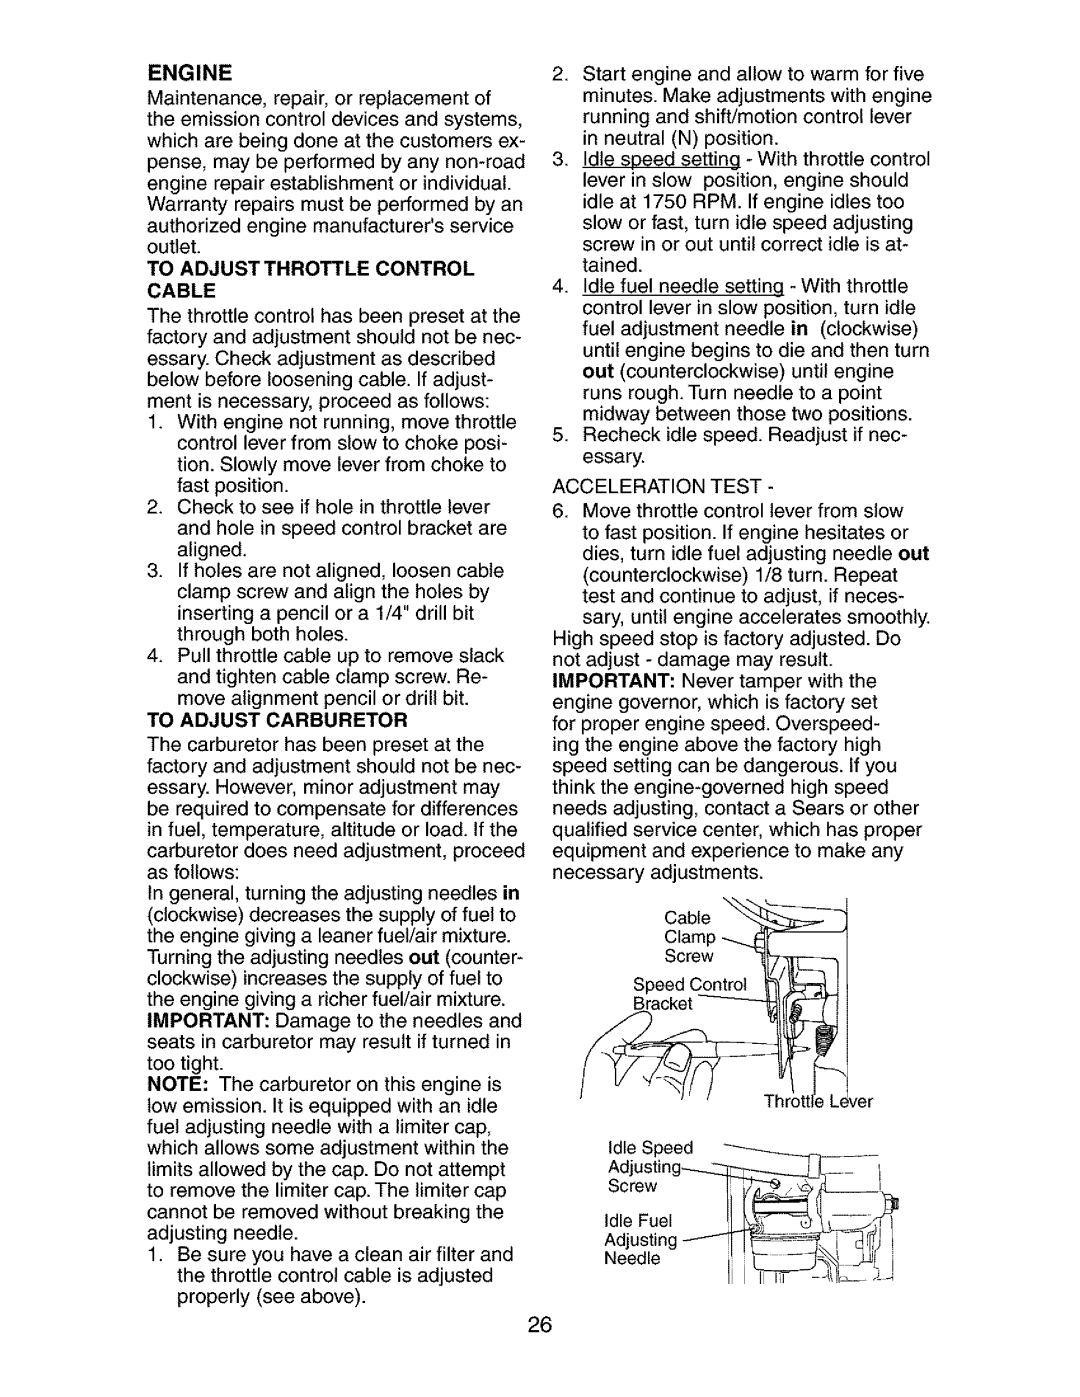 Craftsman 917.273134 owner manual Adjusting--IT= =- f j, screwII ,d,eFoe,II, Engine, To Adjustthrottle Control Cable 